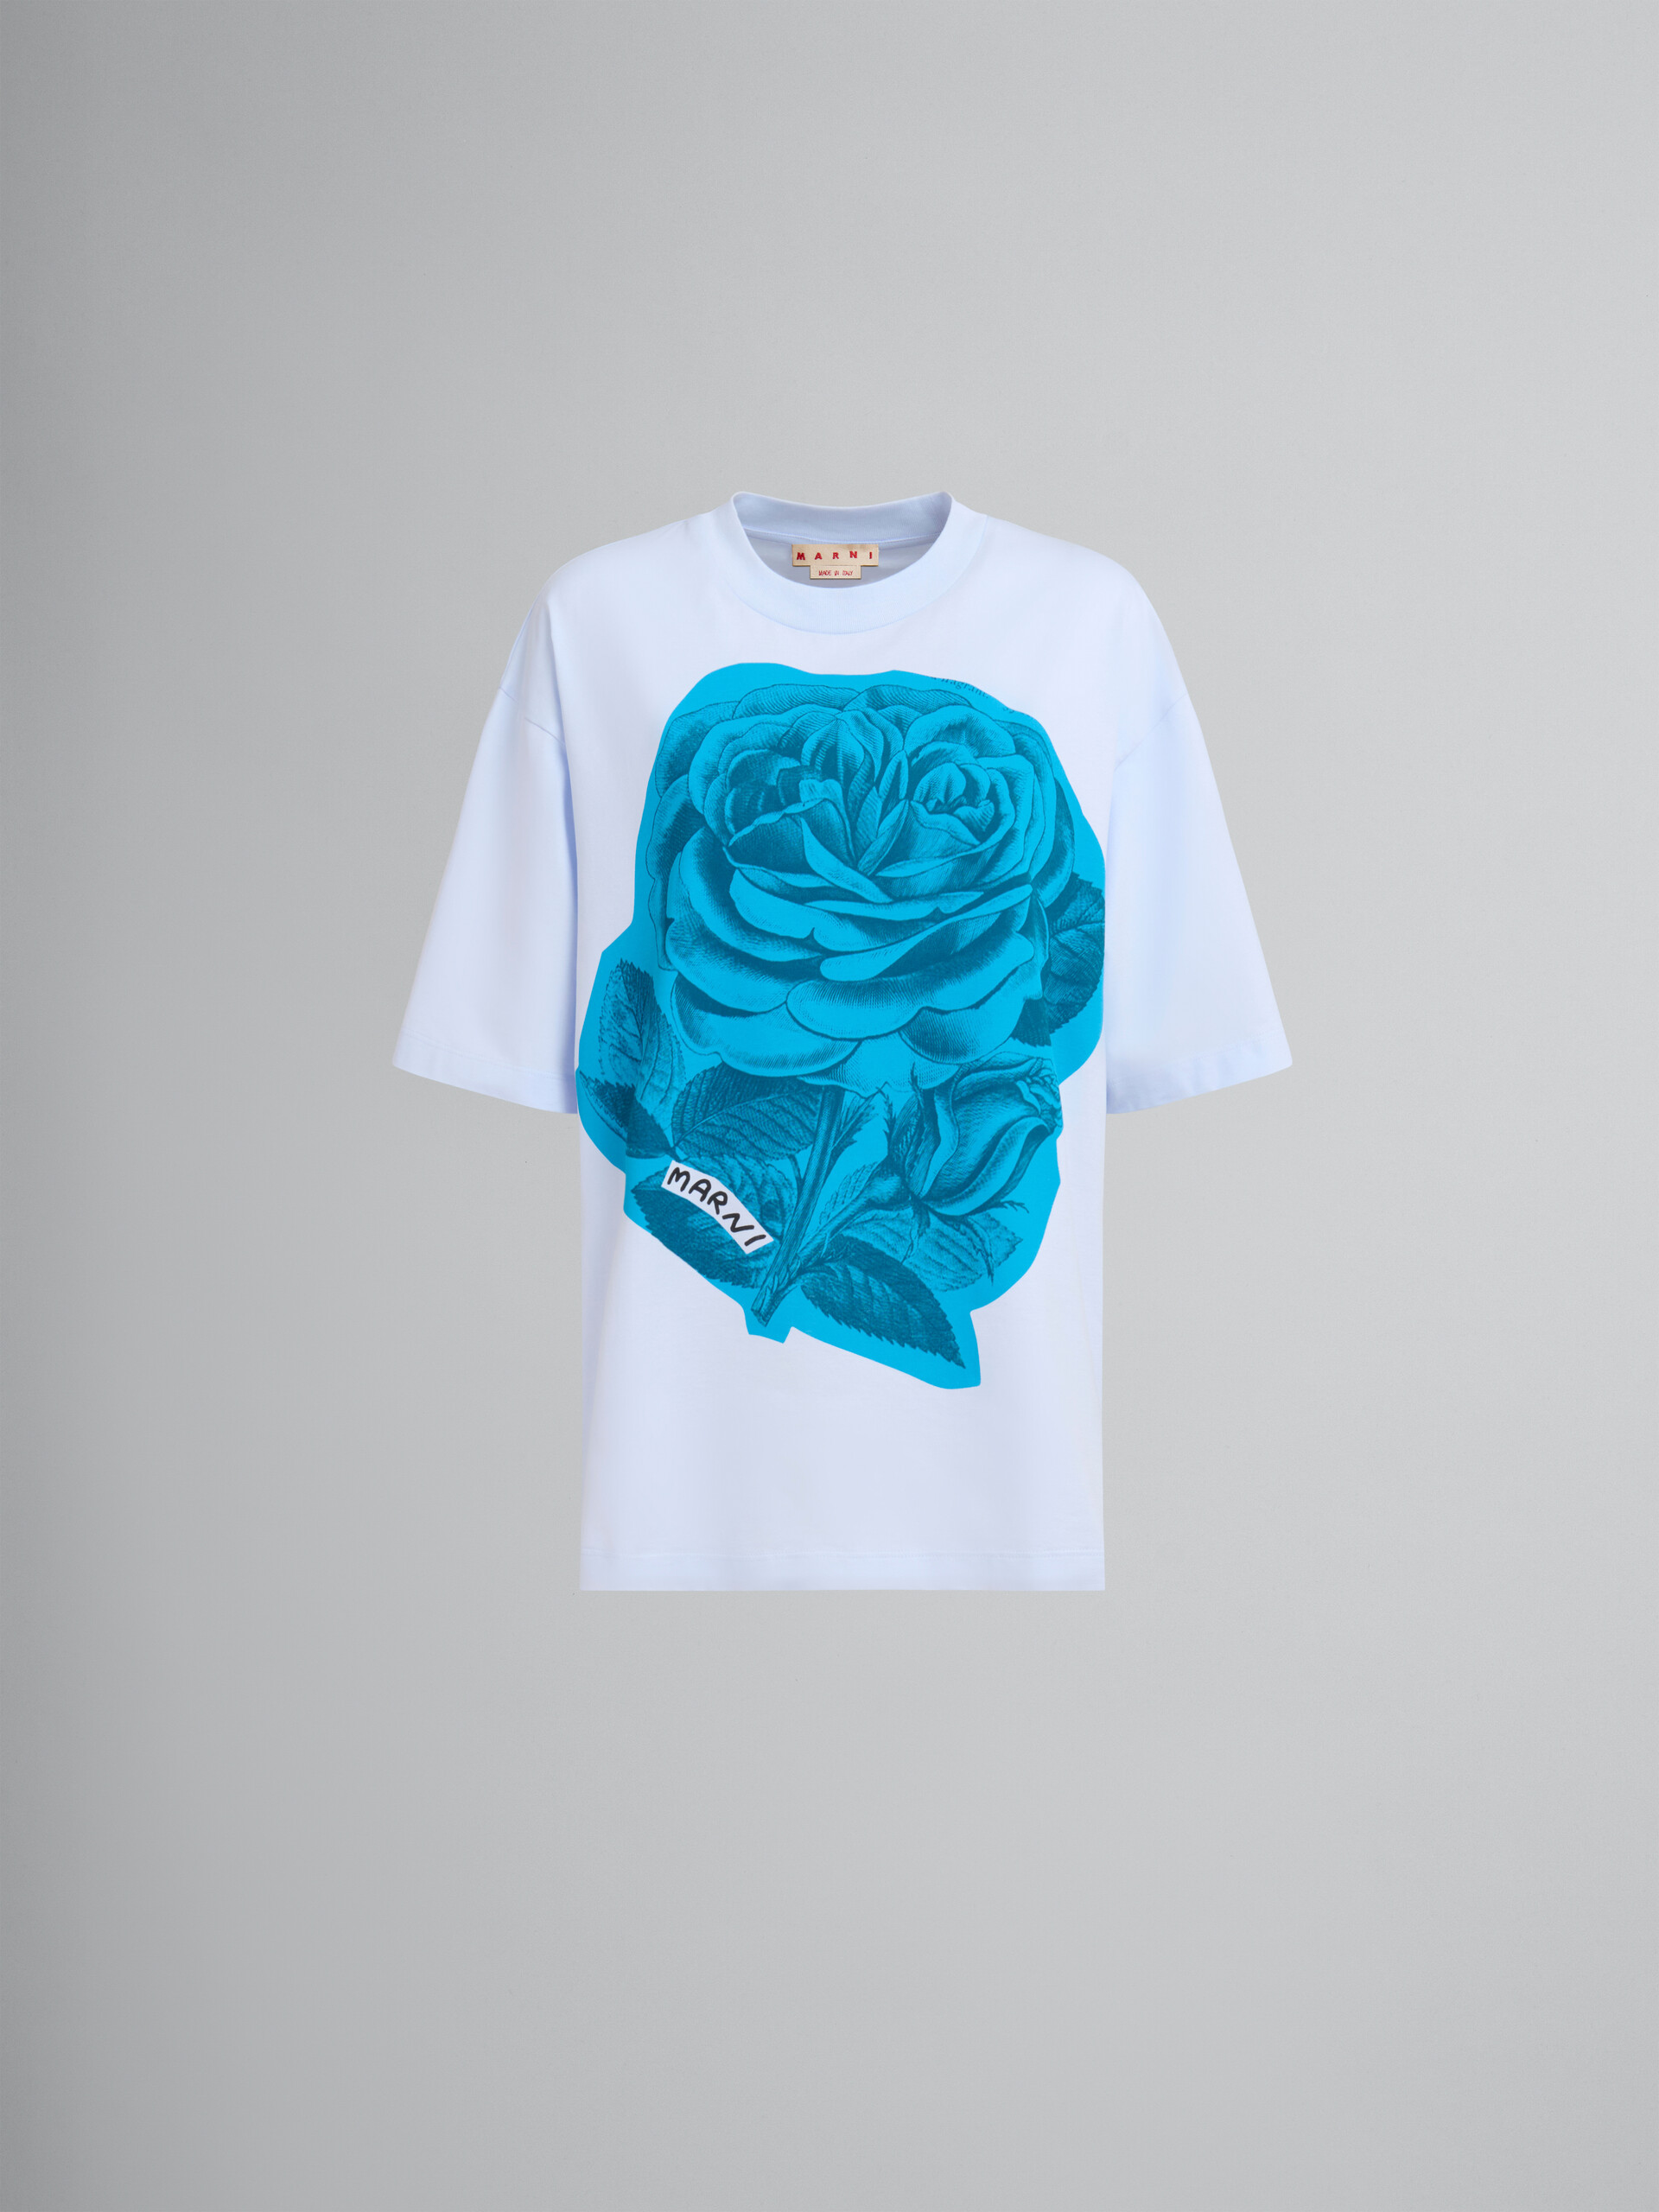 Blaues T-Shirt aus Baumwolle mit Maxi-Blumen-Print - T-shirts - Image 1